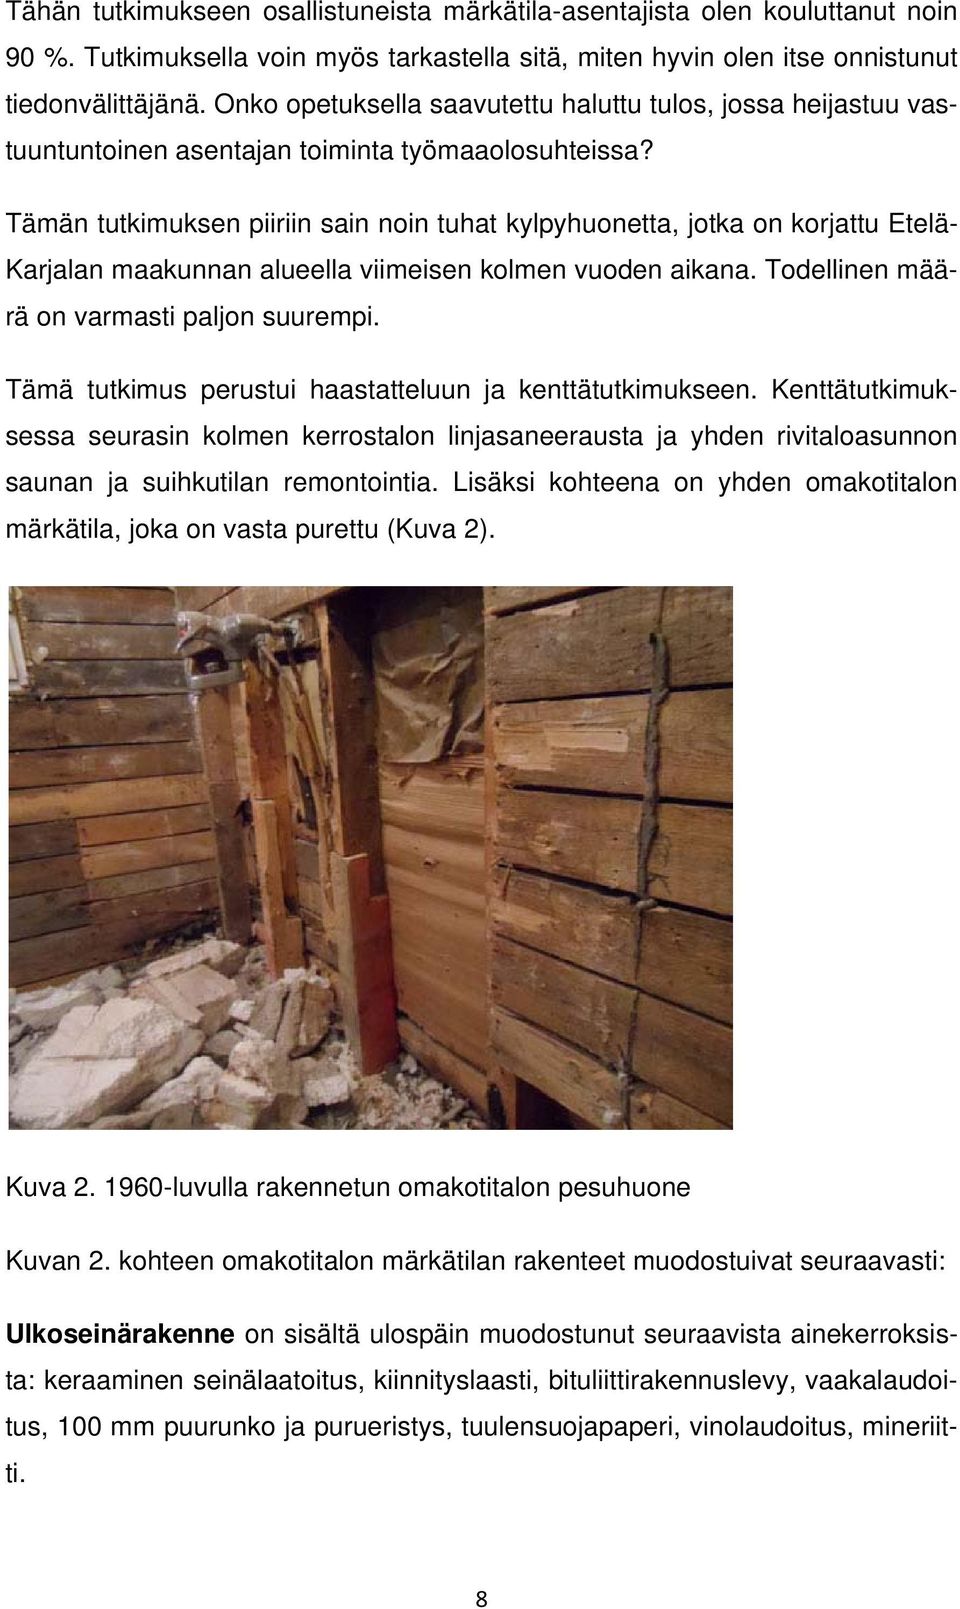 Tämän tutkimuksen piiriin sain noin tuhat kylpyhuonetta, jotka on korjattu Etelä- Karjalan maakunnan alueella viimeisen kolmen vuoden aikana. Todellinen määrä on varmasti paljon suurempi.